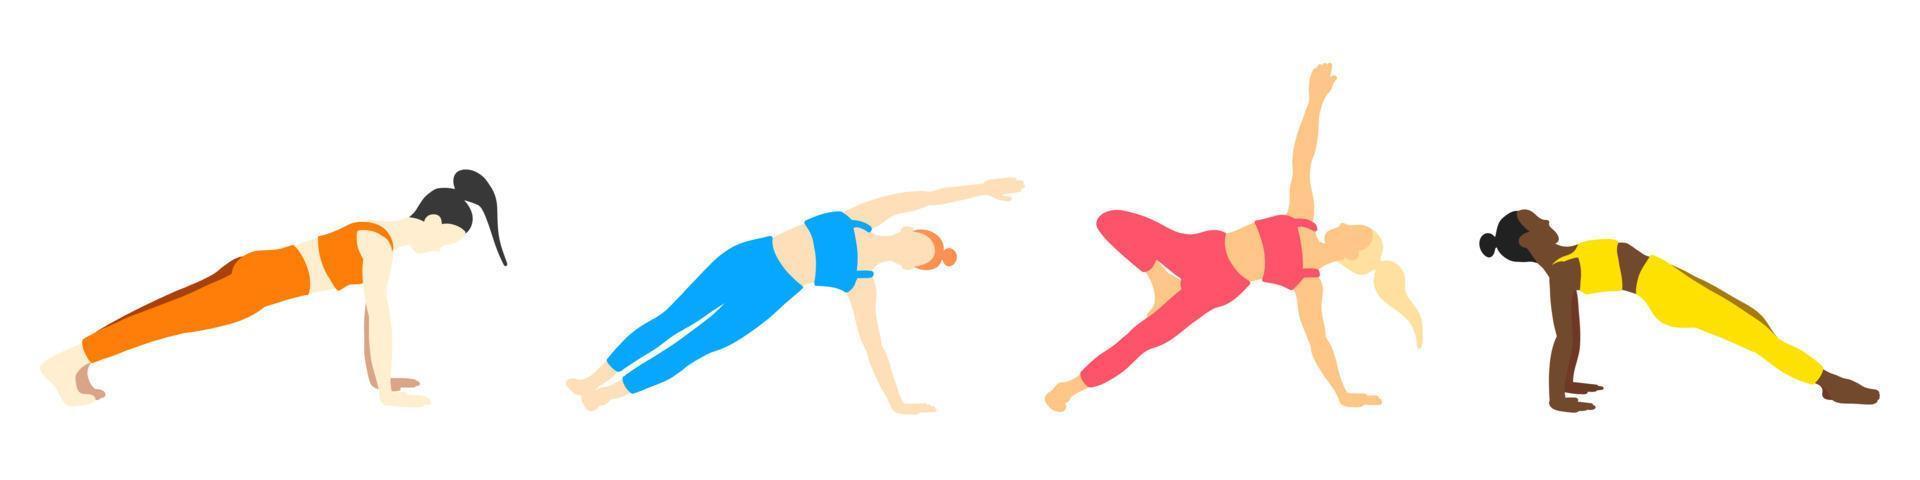 flexibilitet yoga poser samling. europeisk, afrikansk, asiatisk kvinna, lady, kvinna, flicka. pilates, mental hälsa, Träning, Gym. vektor illustration i tecknad serie platt stil isolerat på vit bakgrund.